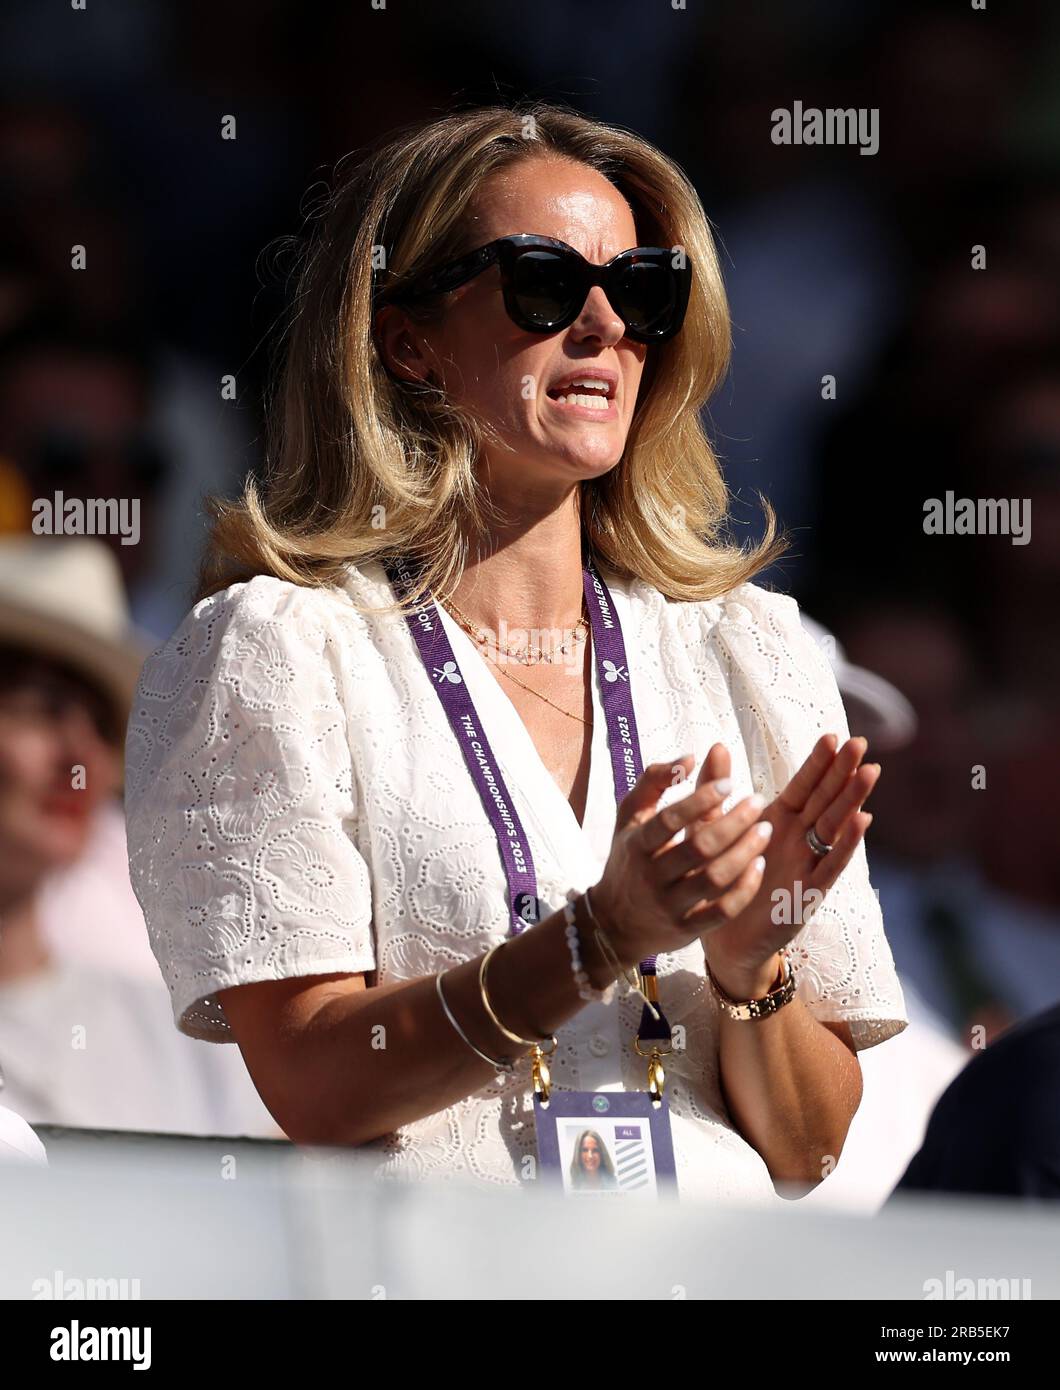 Kim Murray nel quinto giorno dei campionati di Wimbledon 2023 all'All England Lawn Tennis and Croquet Club di Wimbledon. Data immagine: Venerdì 7 luglio 2023. Foto Stock